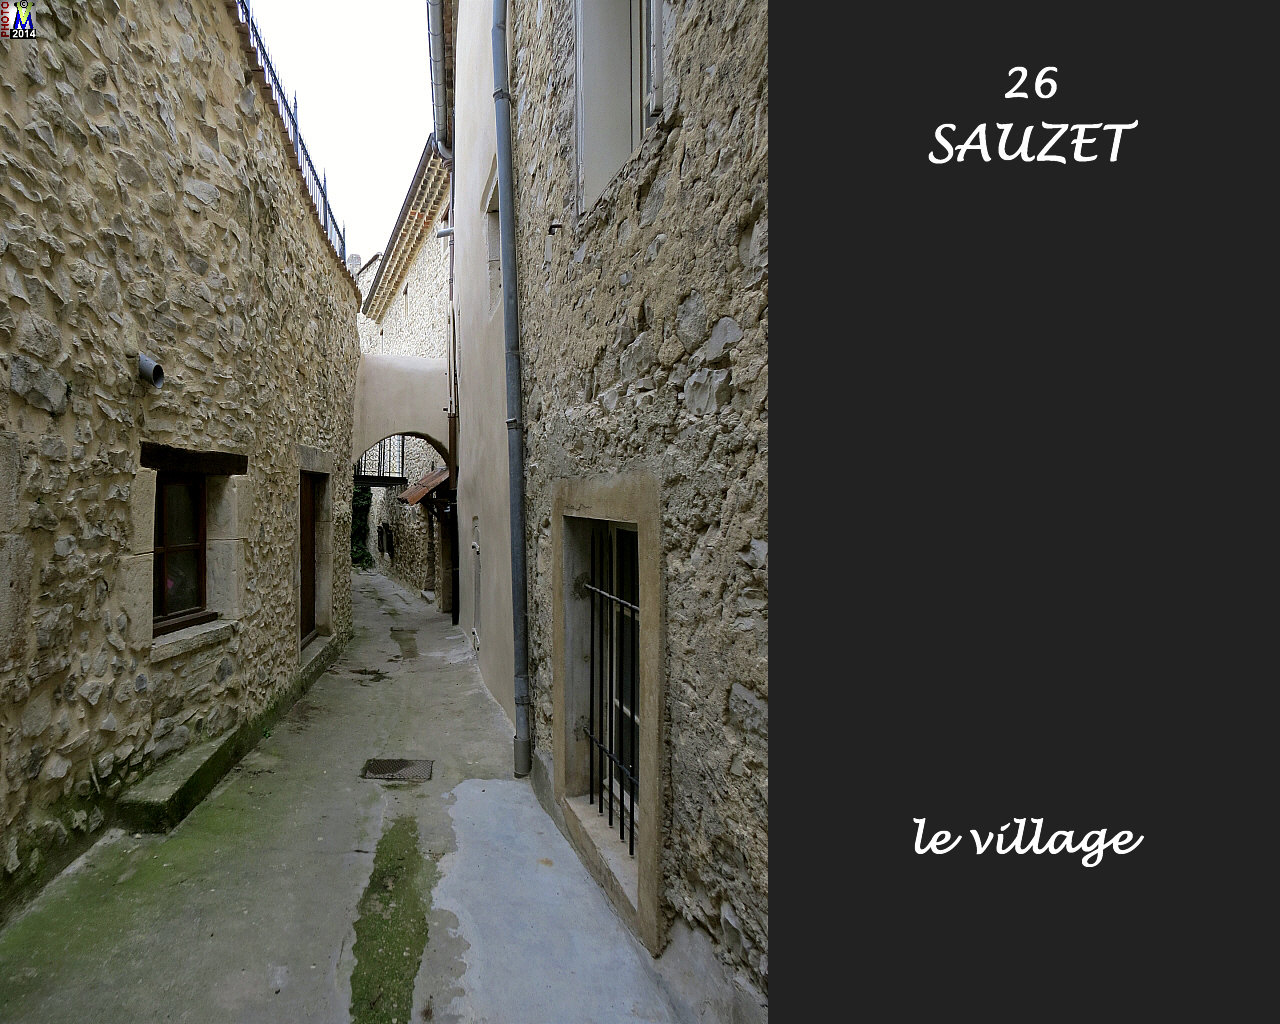 26SAUZET_village_134.jpg